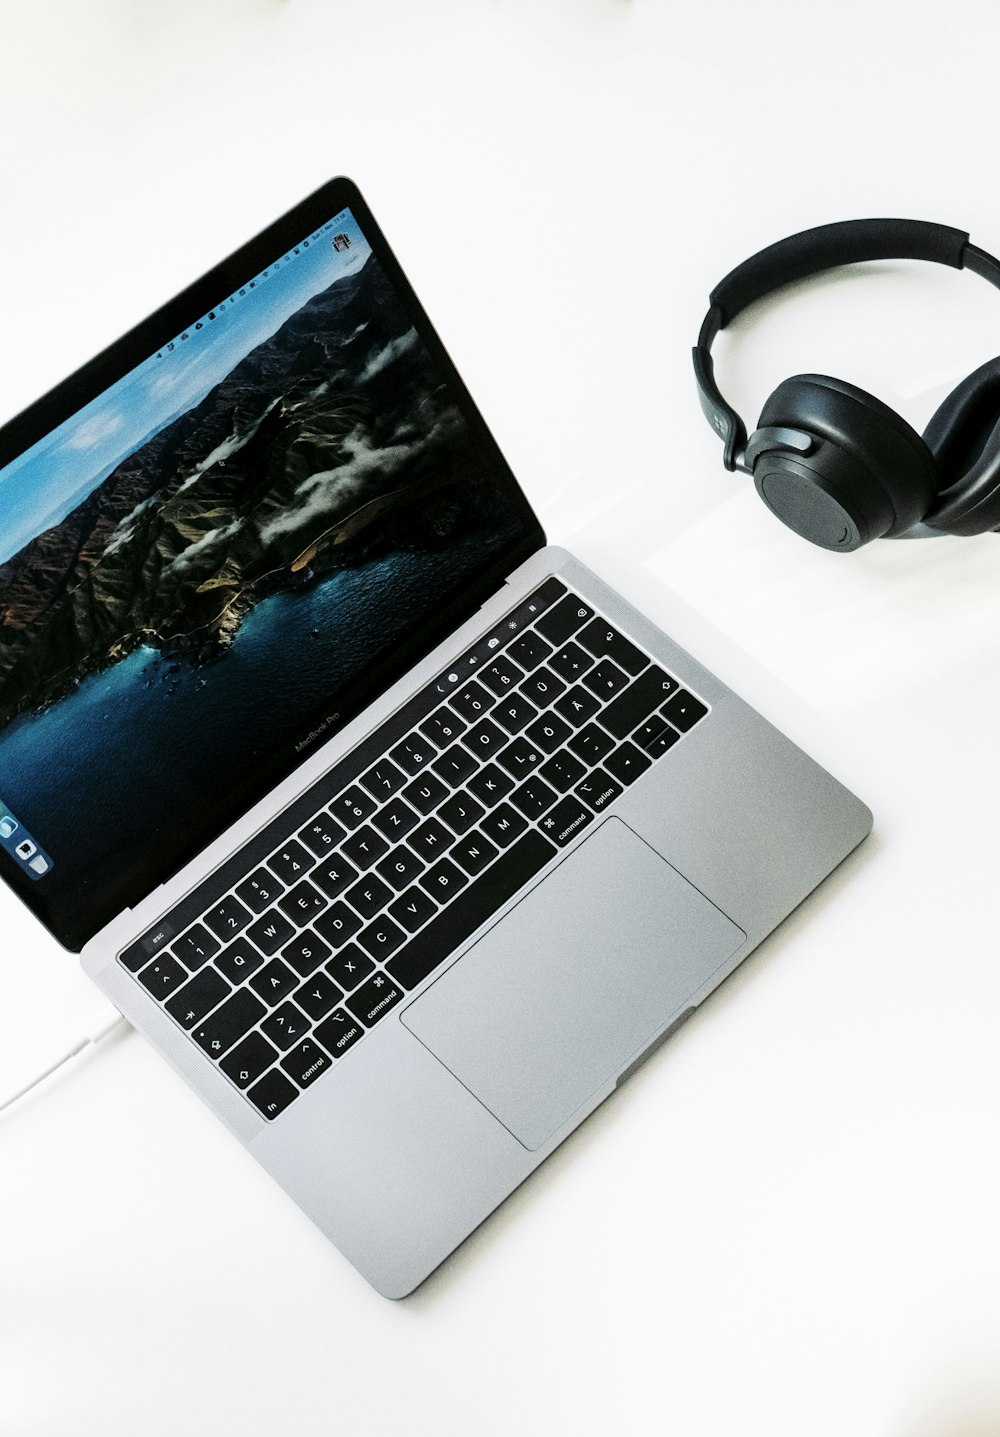 macbook pro beside black headphones